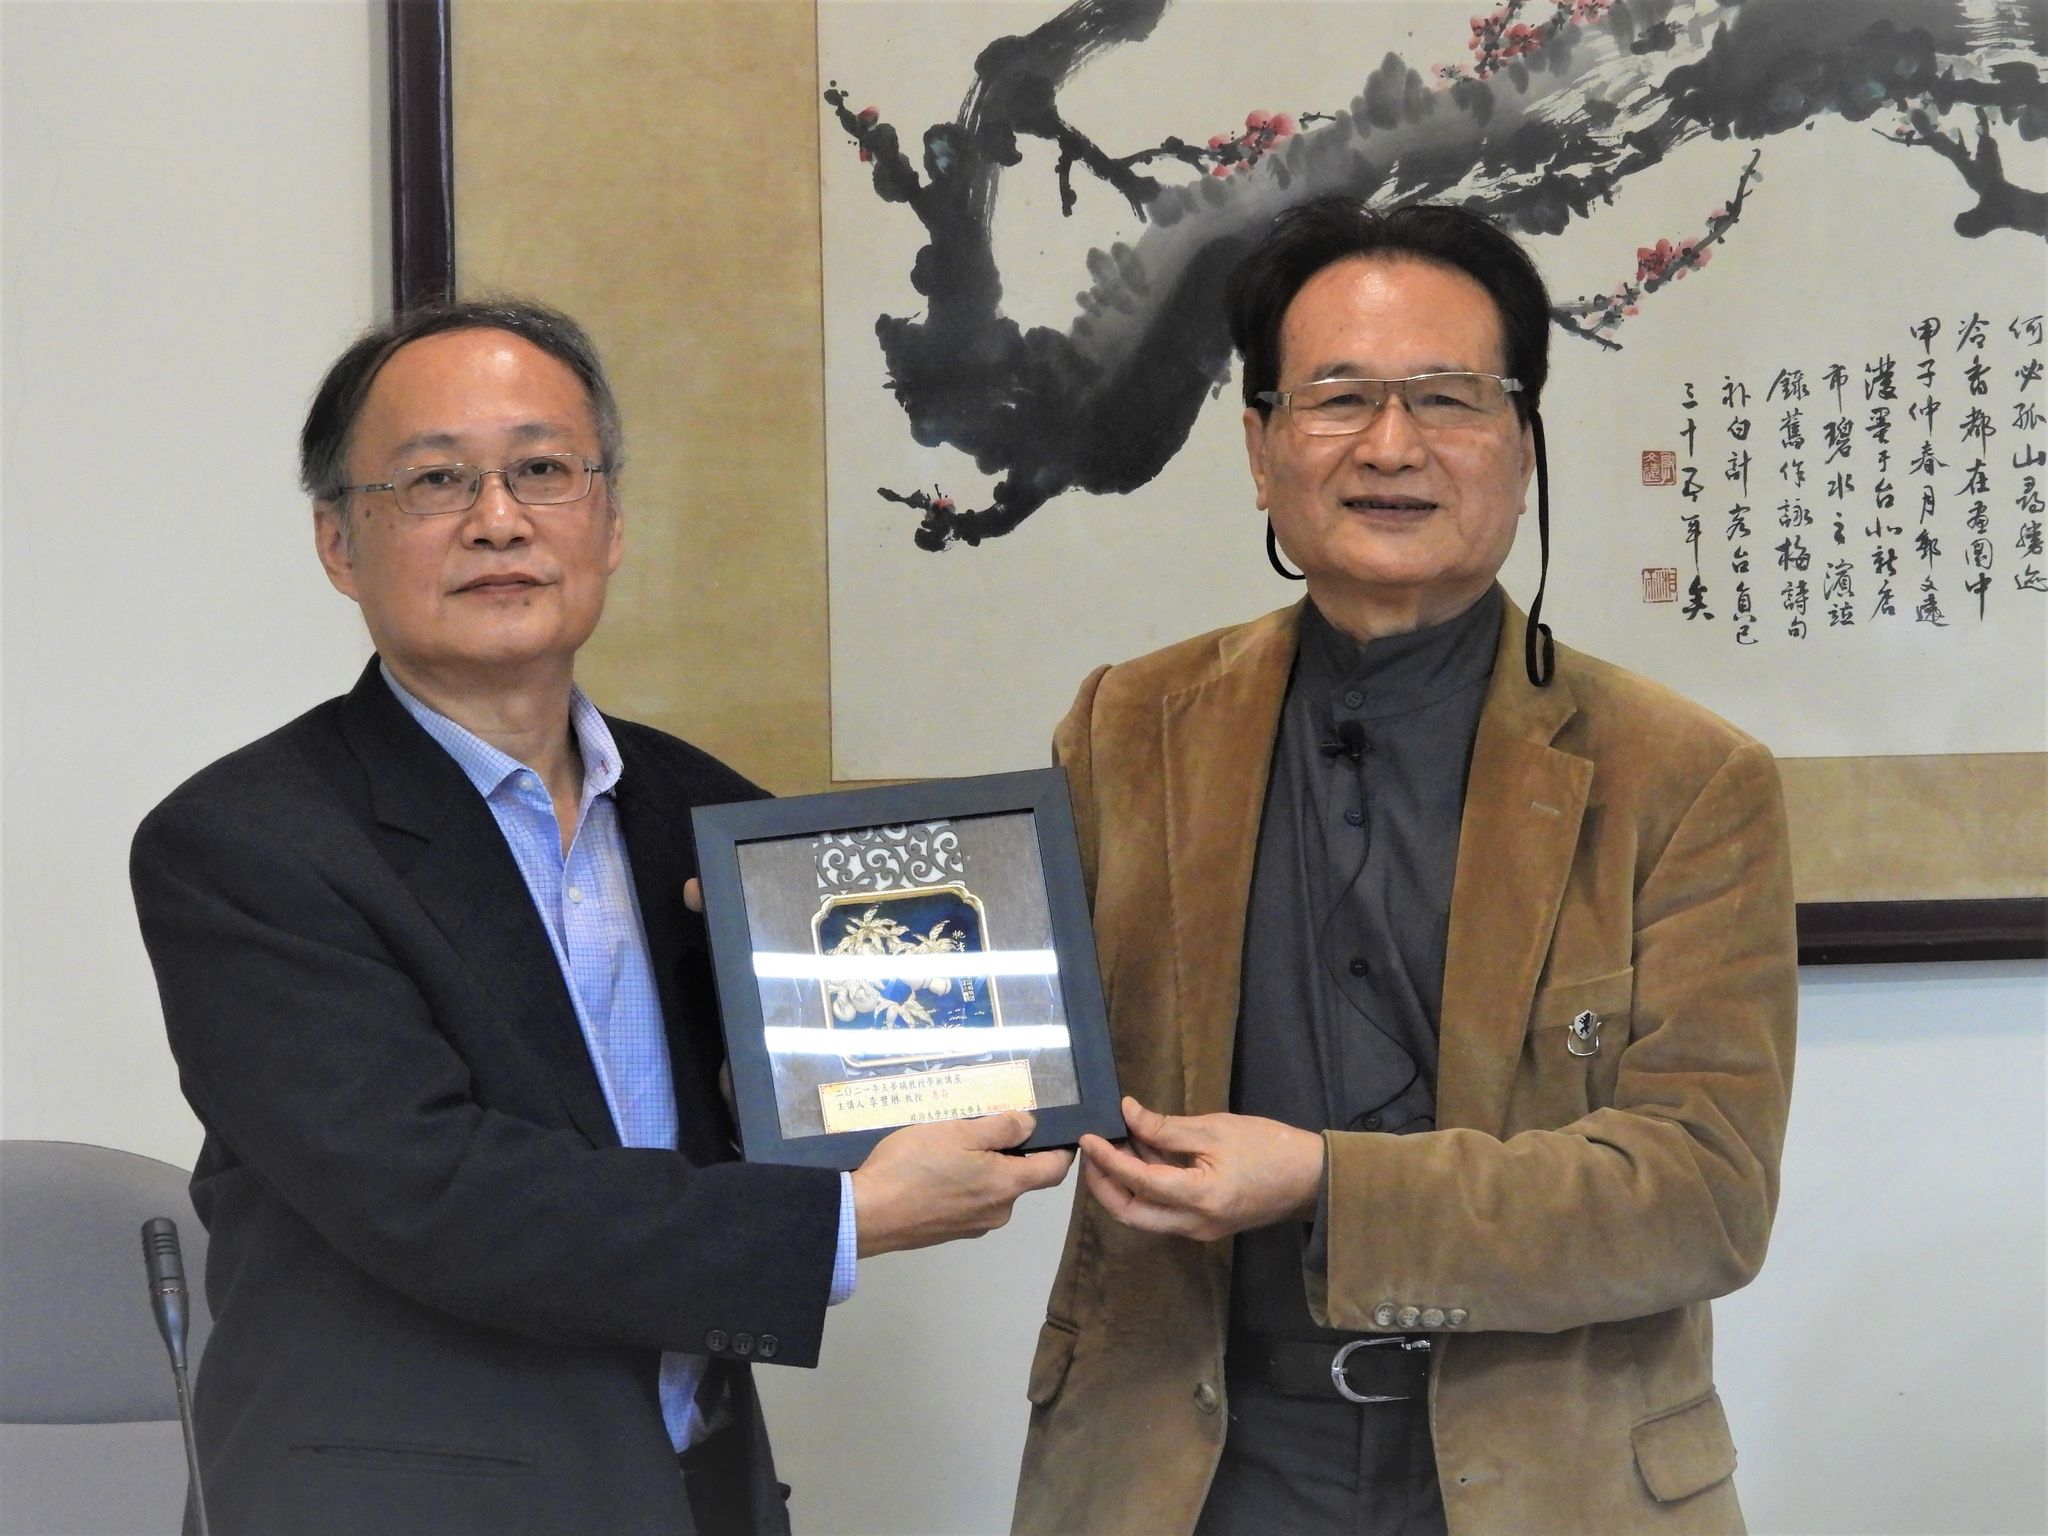 恭賀李豐楙教授獲選中央研究院第33屆人文及社會科學組院士